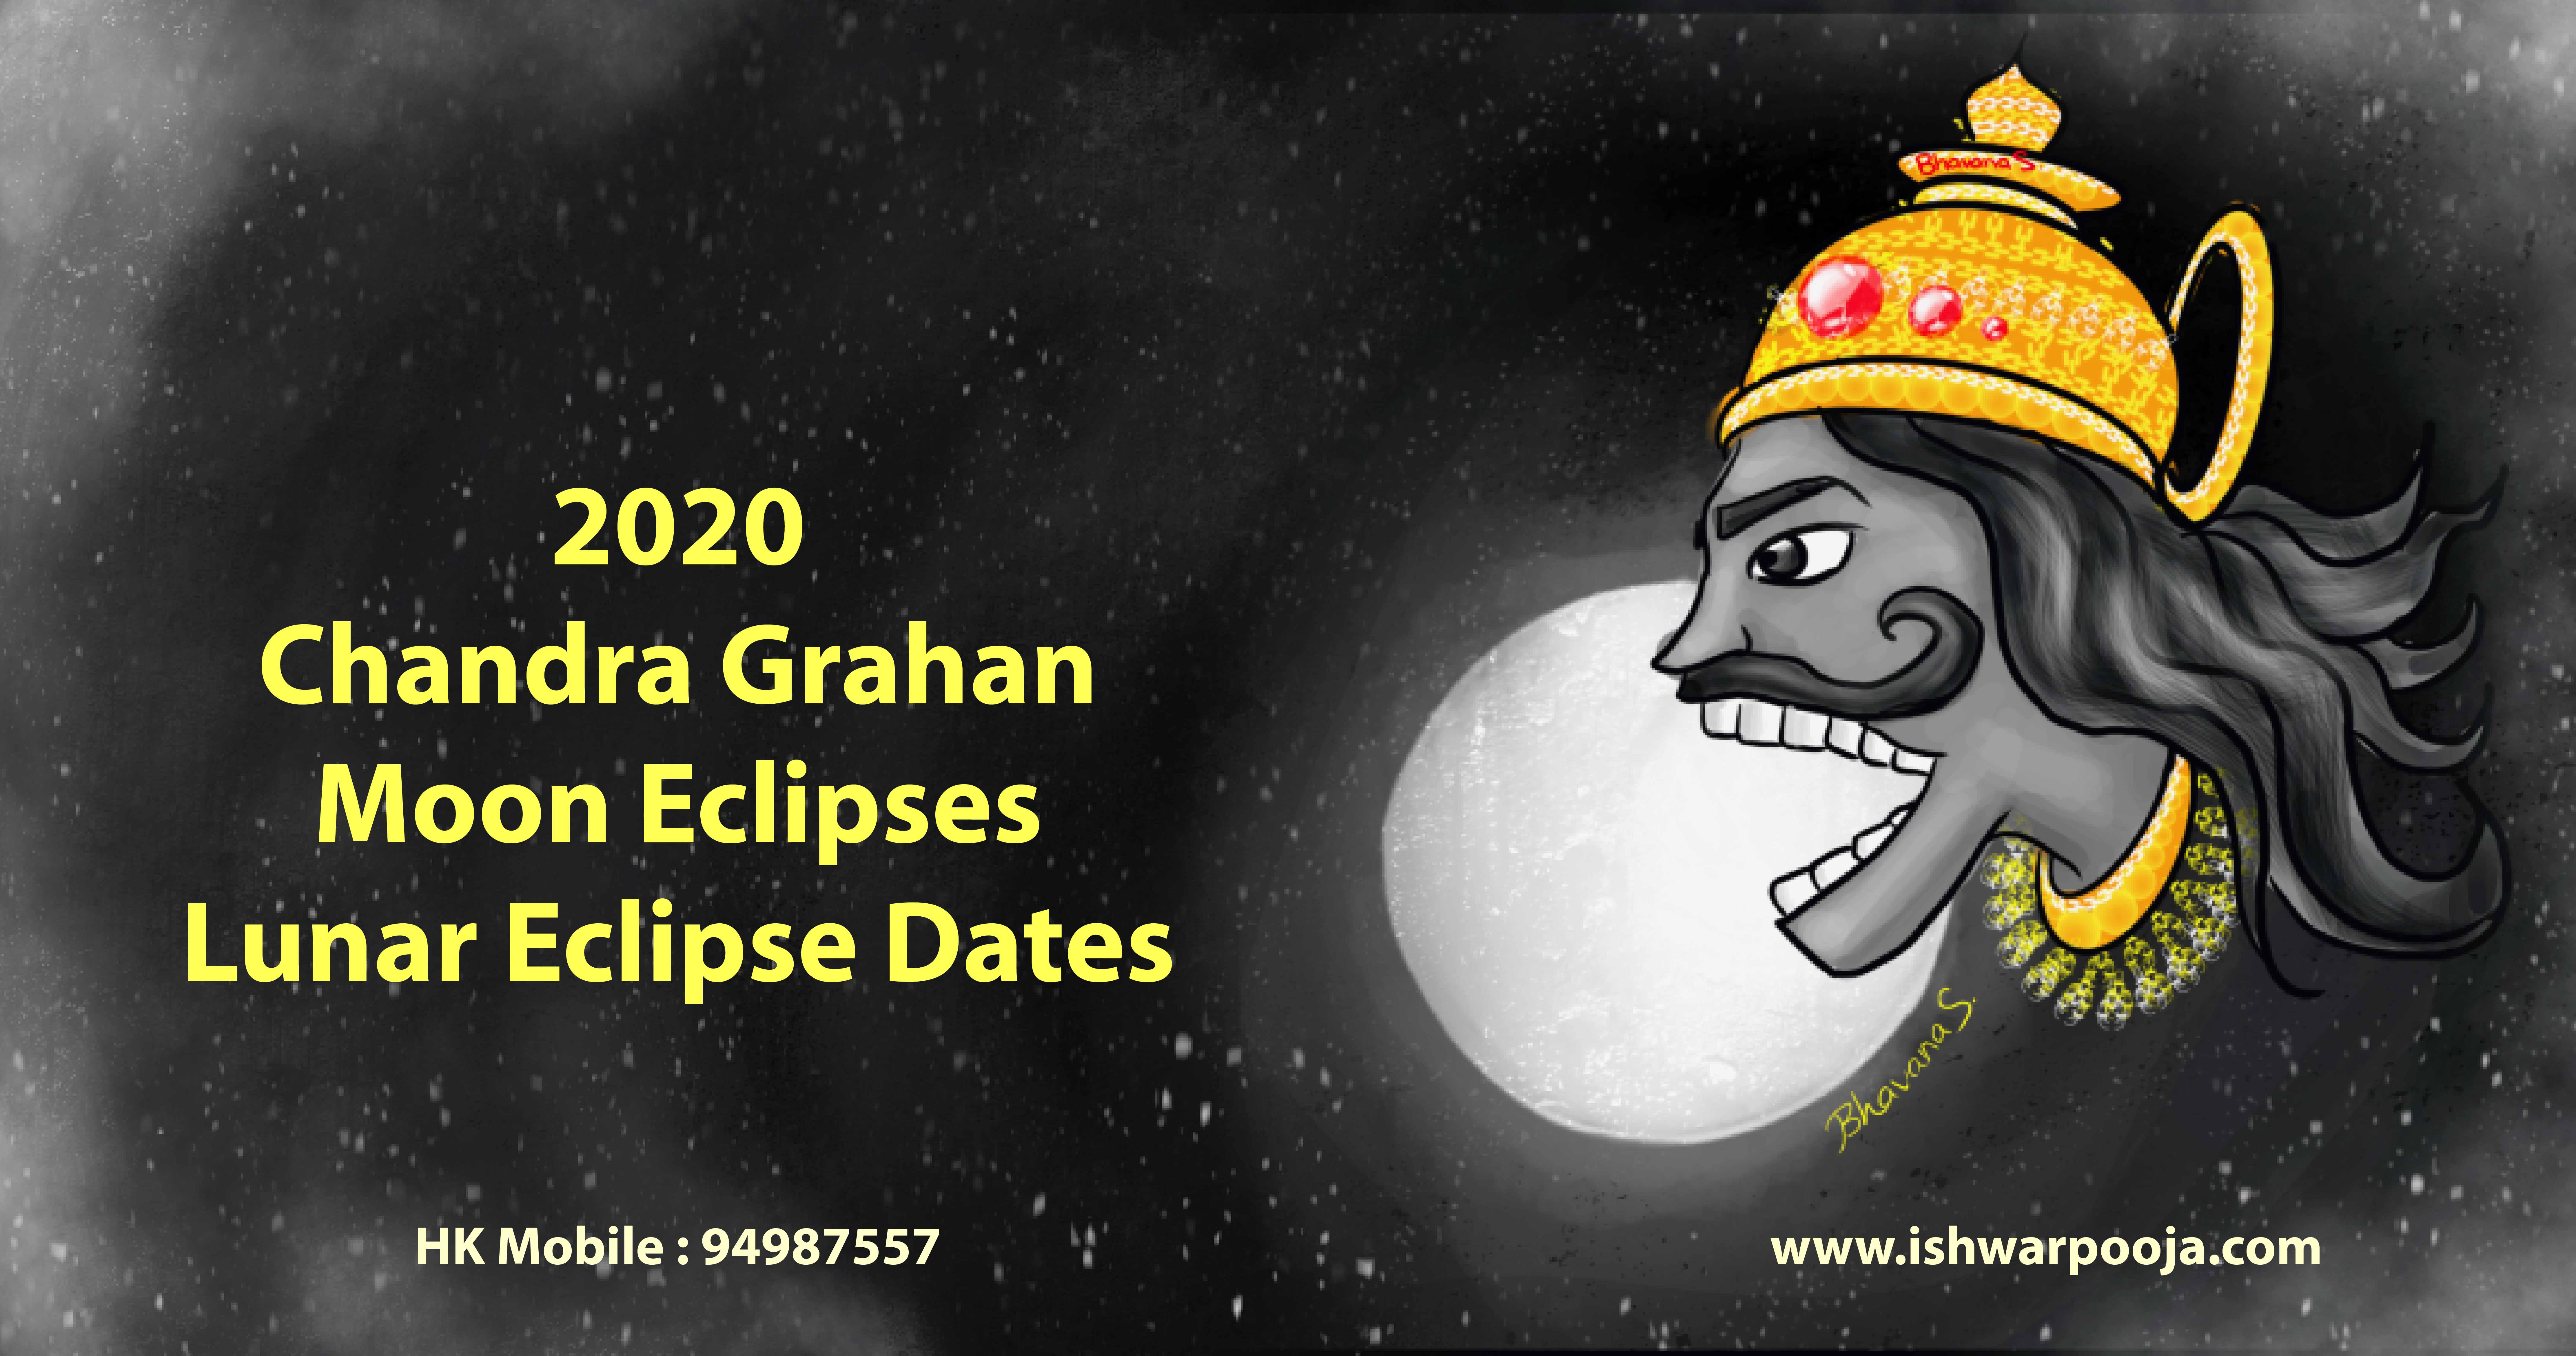 10 मई के सूर्य ग्रहण का राशियों पर प्रभाव | Surya Grahan on May 10, Effect  on zodiac signs, 10 मई के सूर्य ग्रहण का राशियों पर प्रभाव - Hindi Oneindia